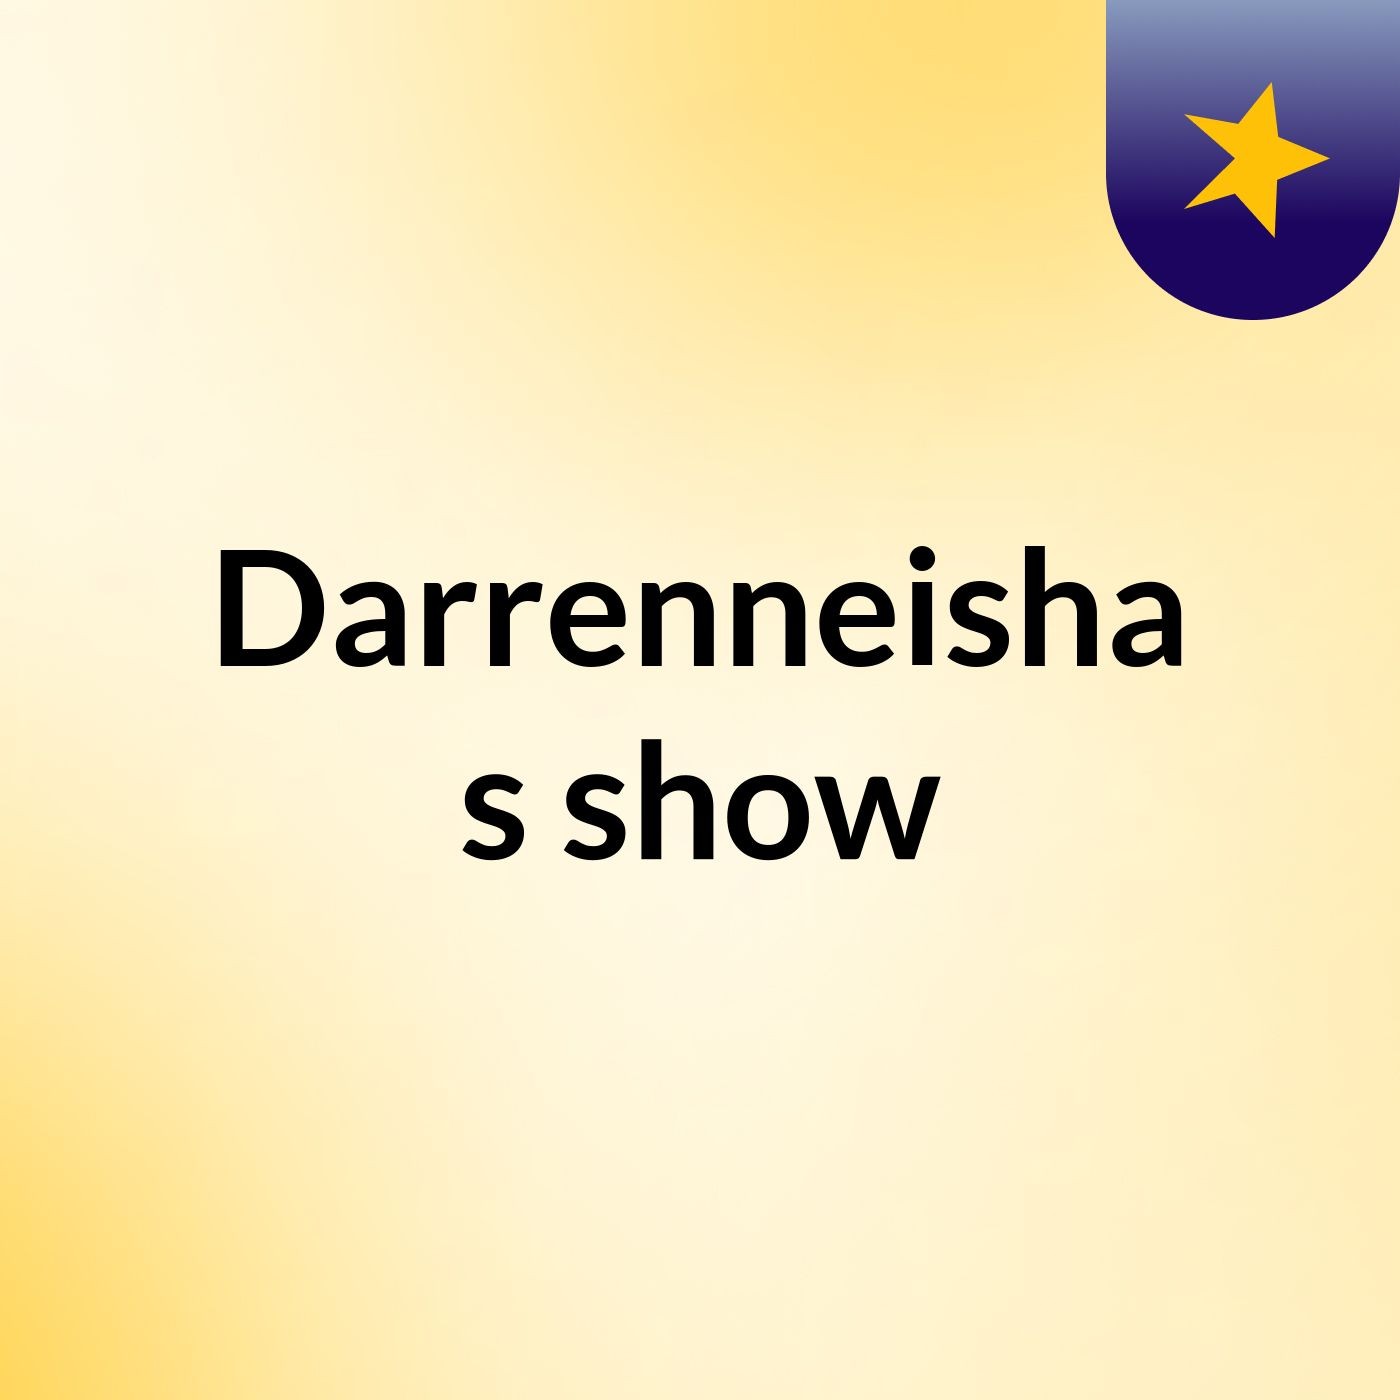 Episode 11 - Darrenneisha's show